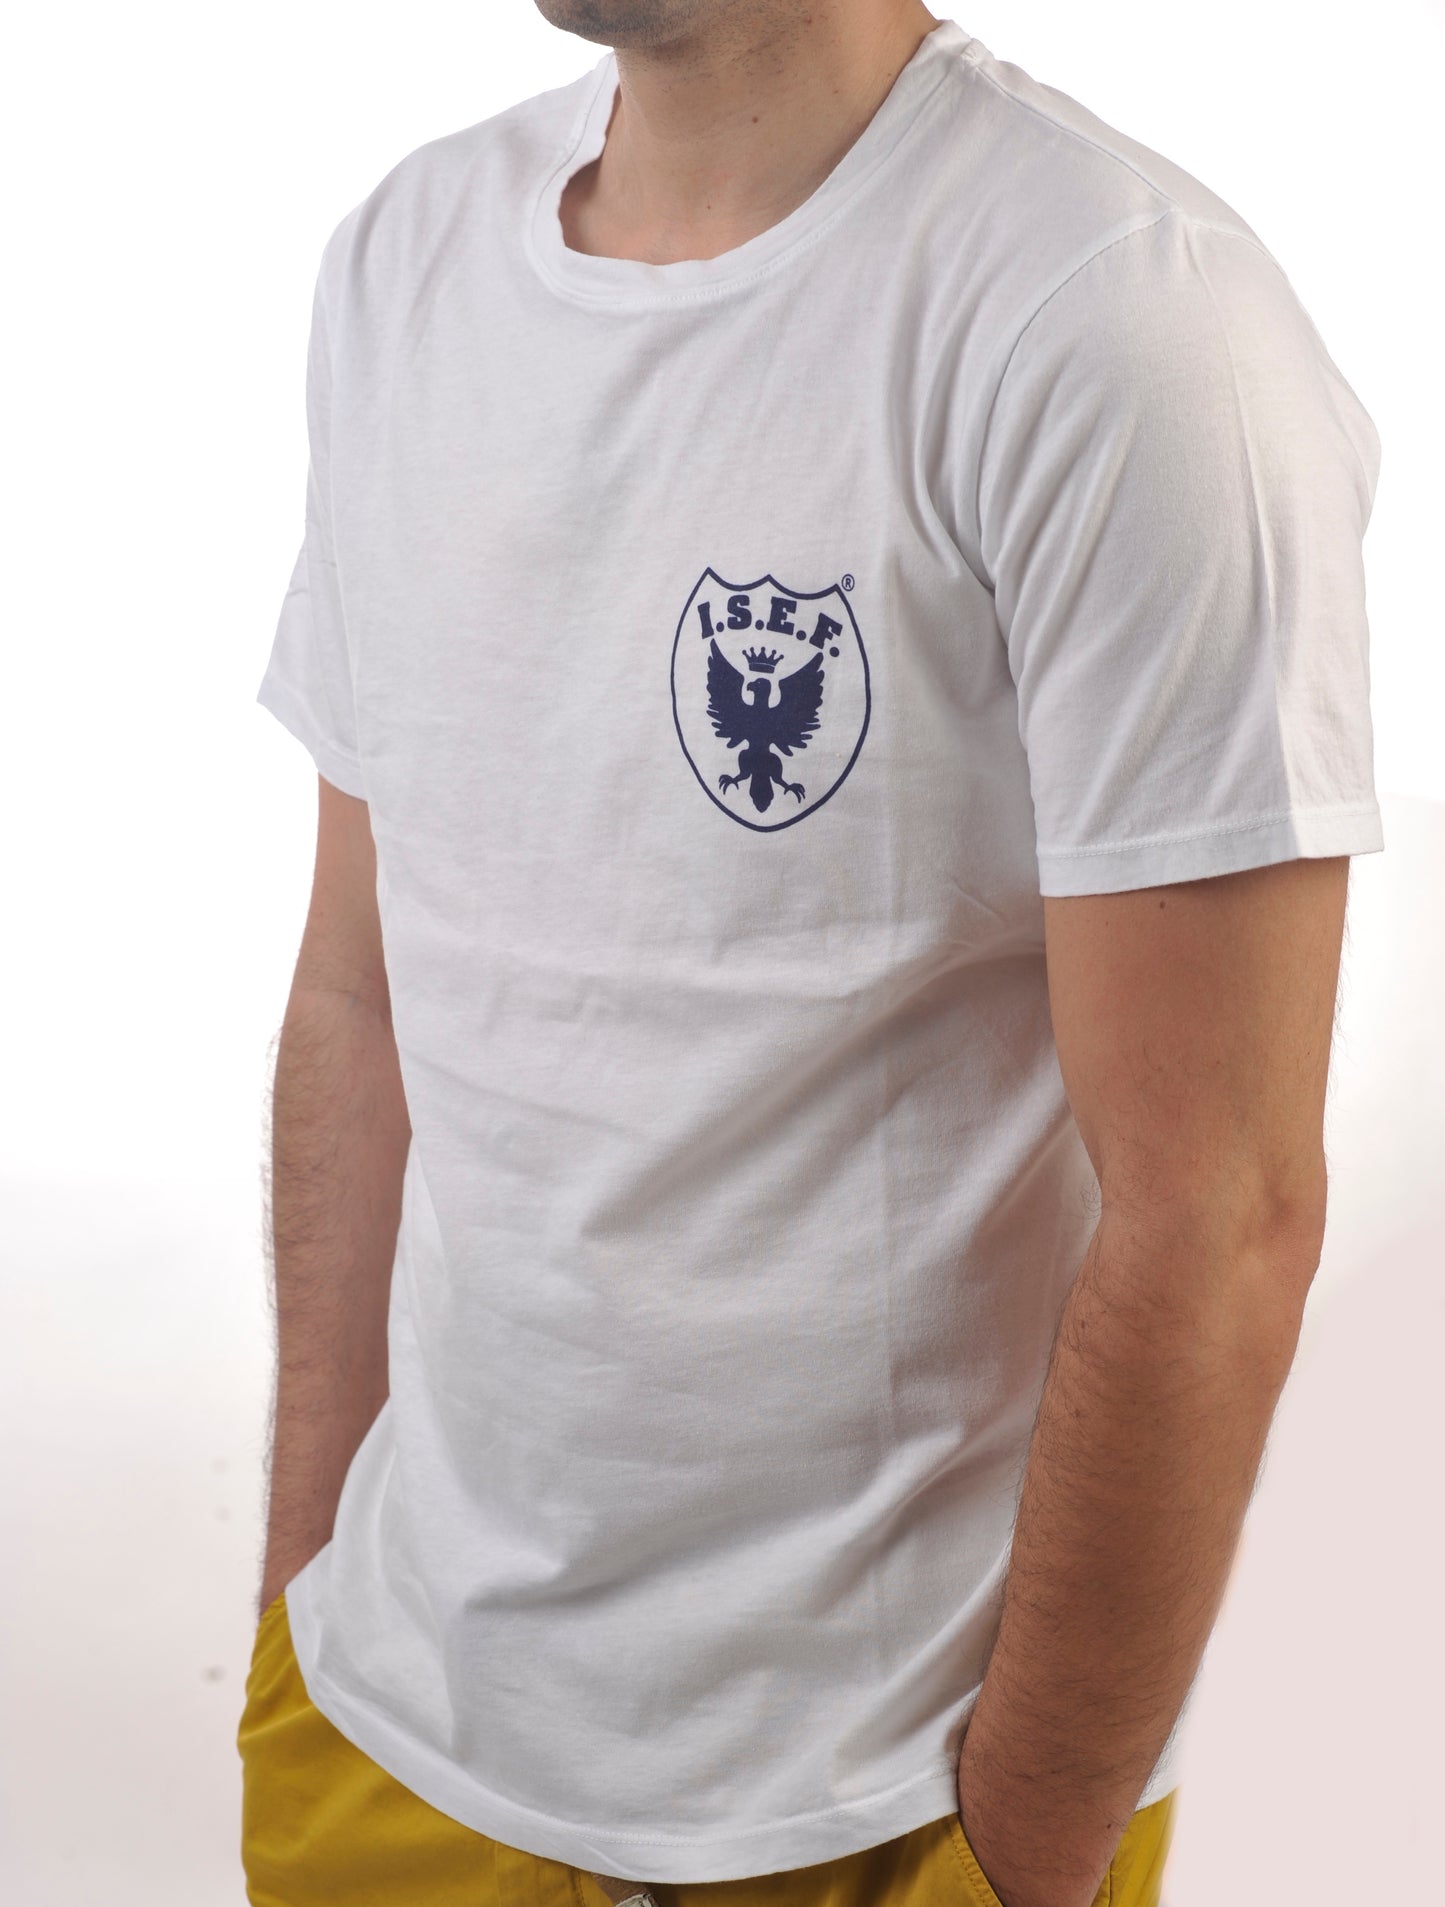 ISEF1952 - White - Genova T-Shirt